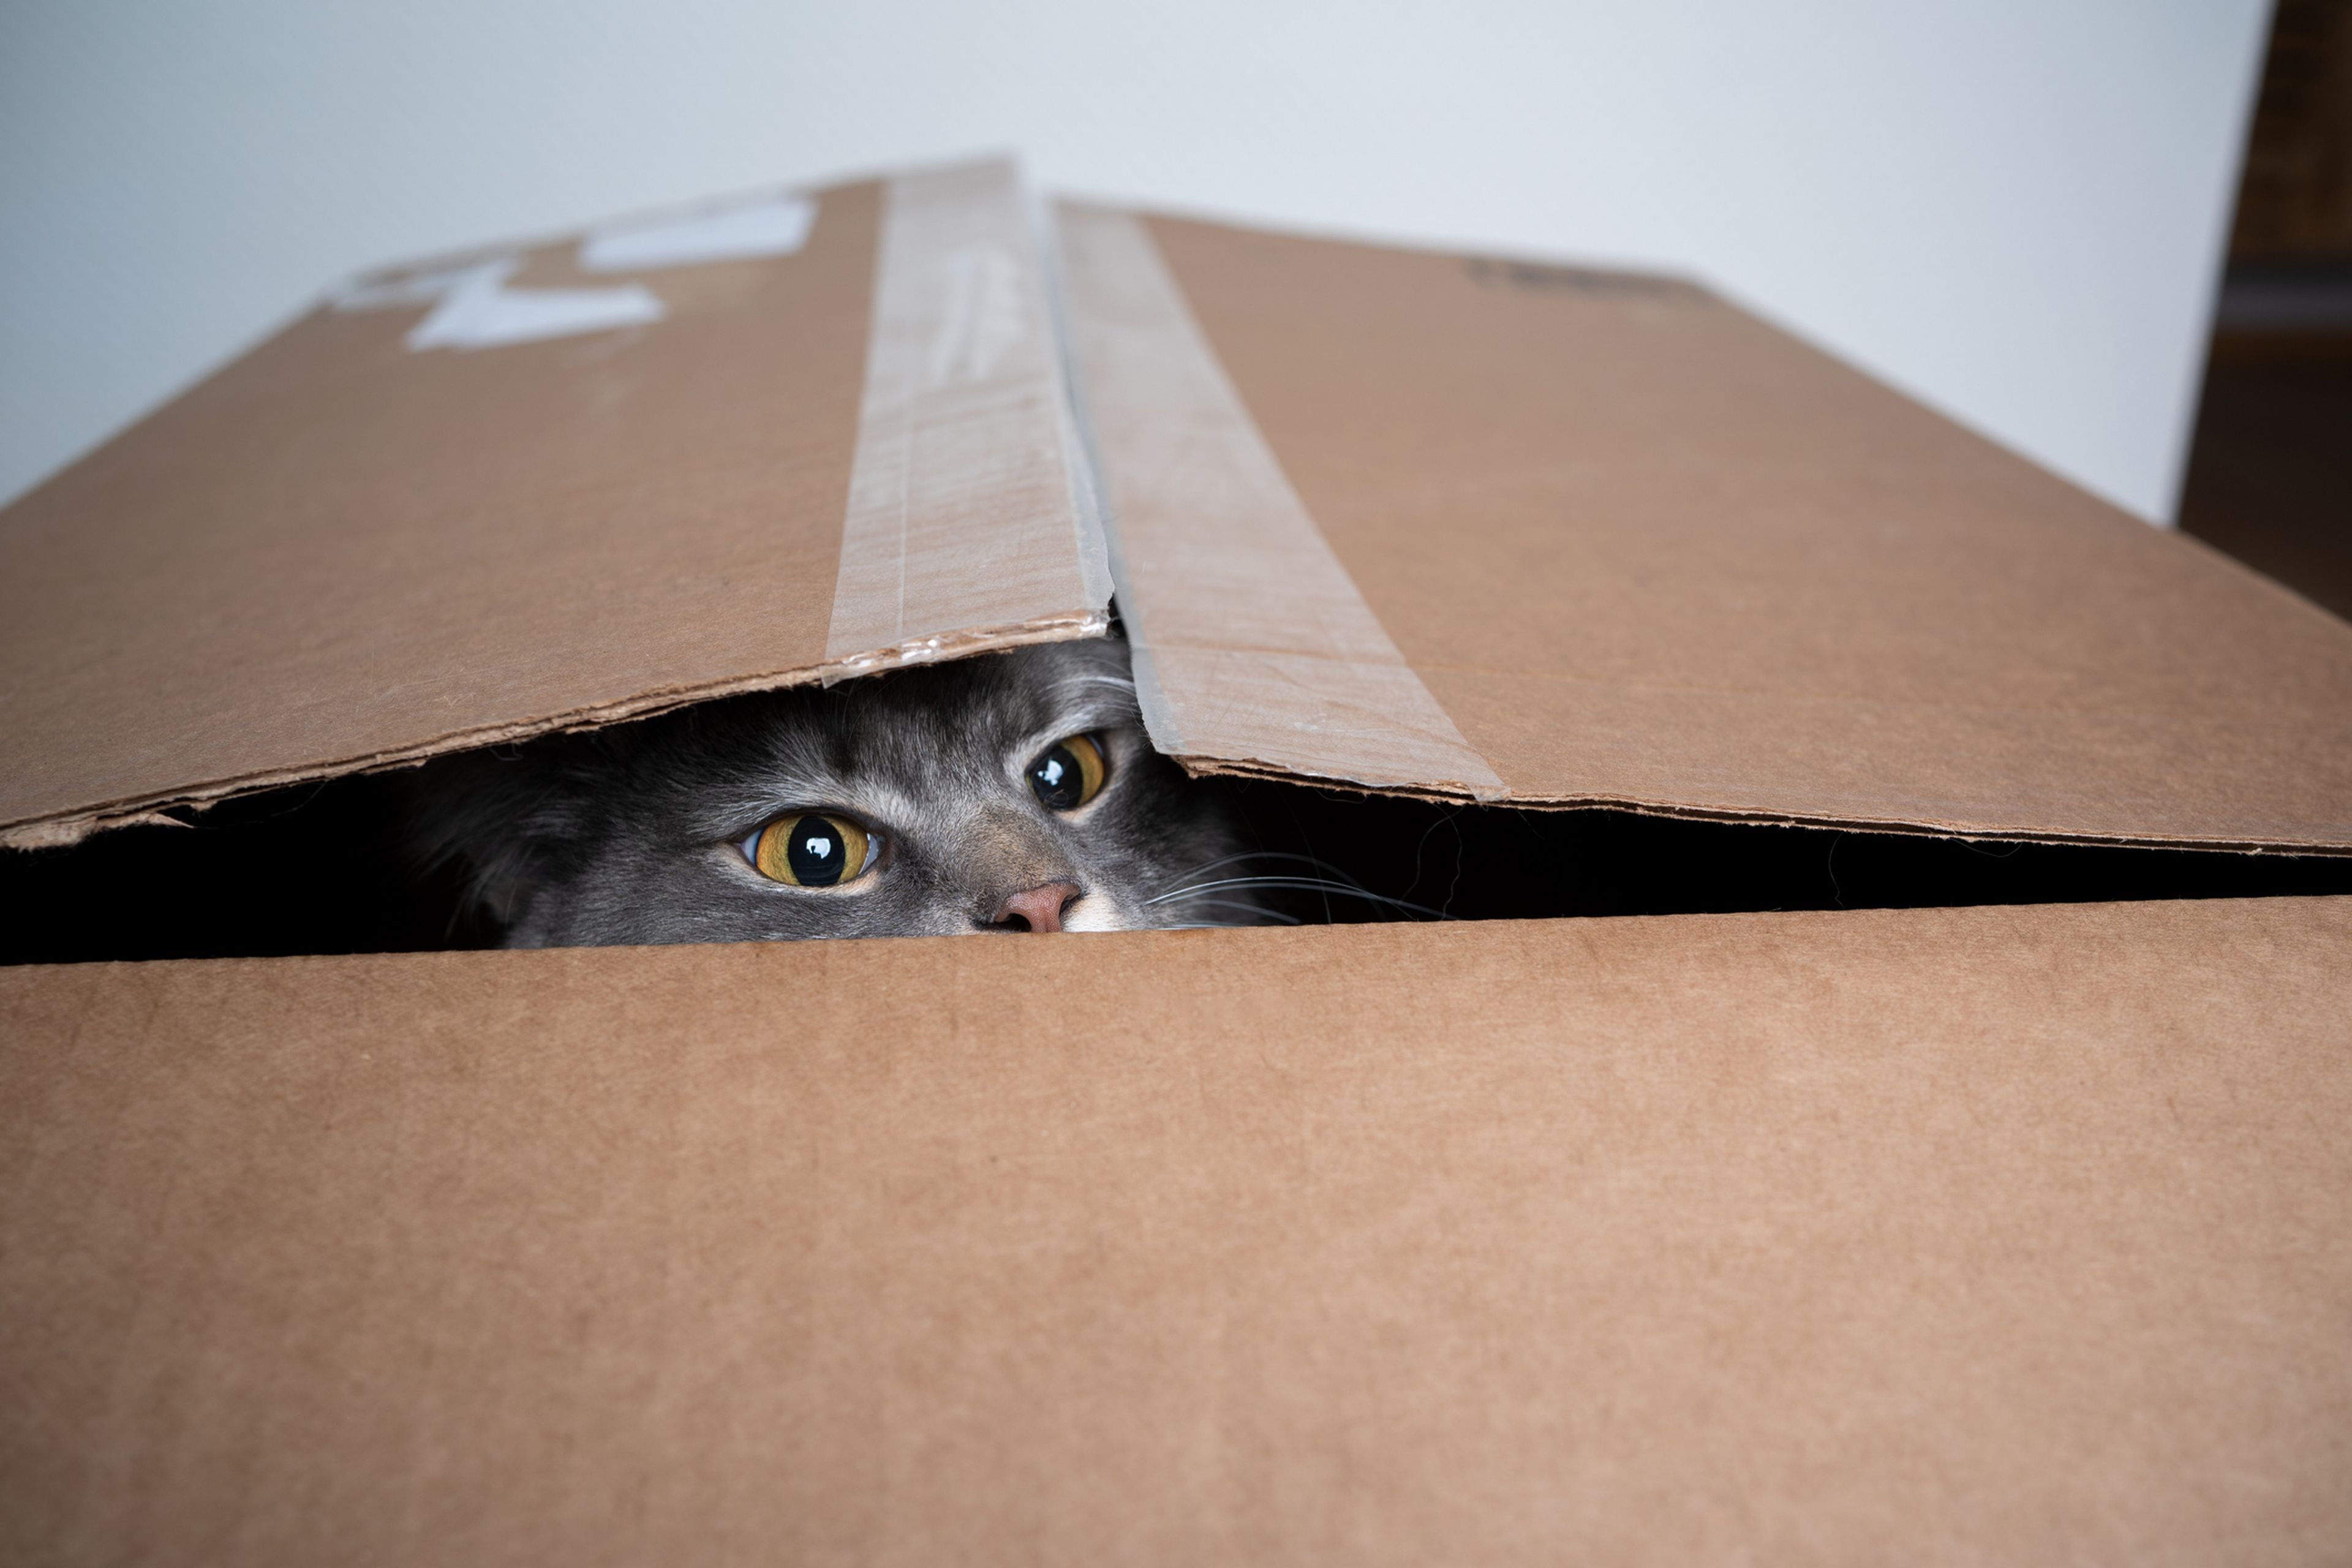 Gato en una caja